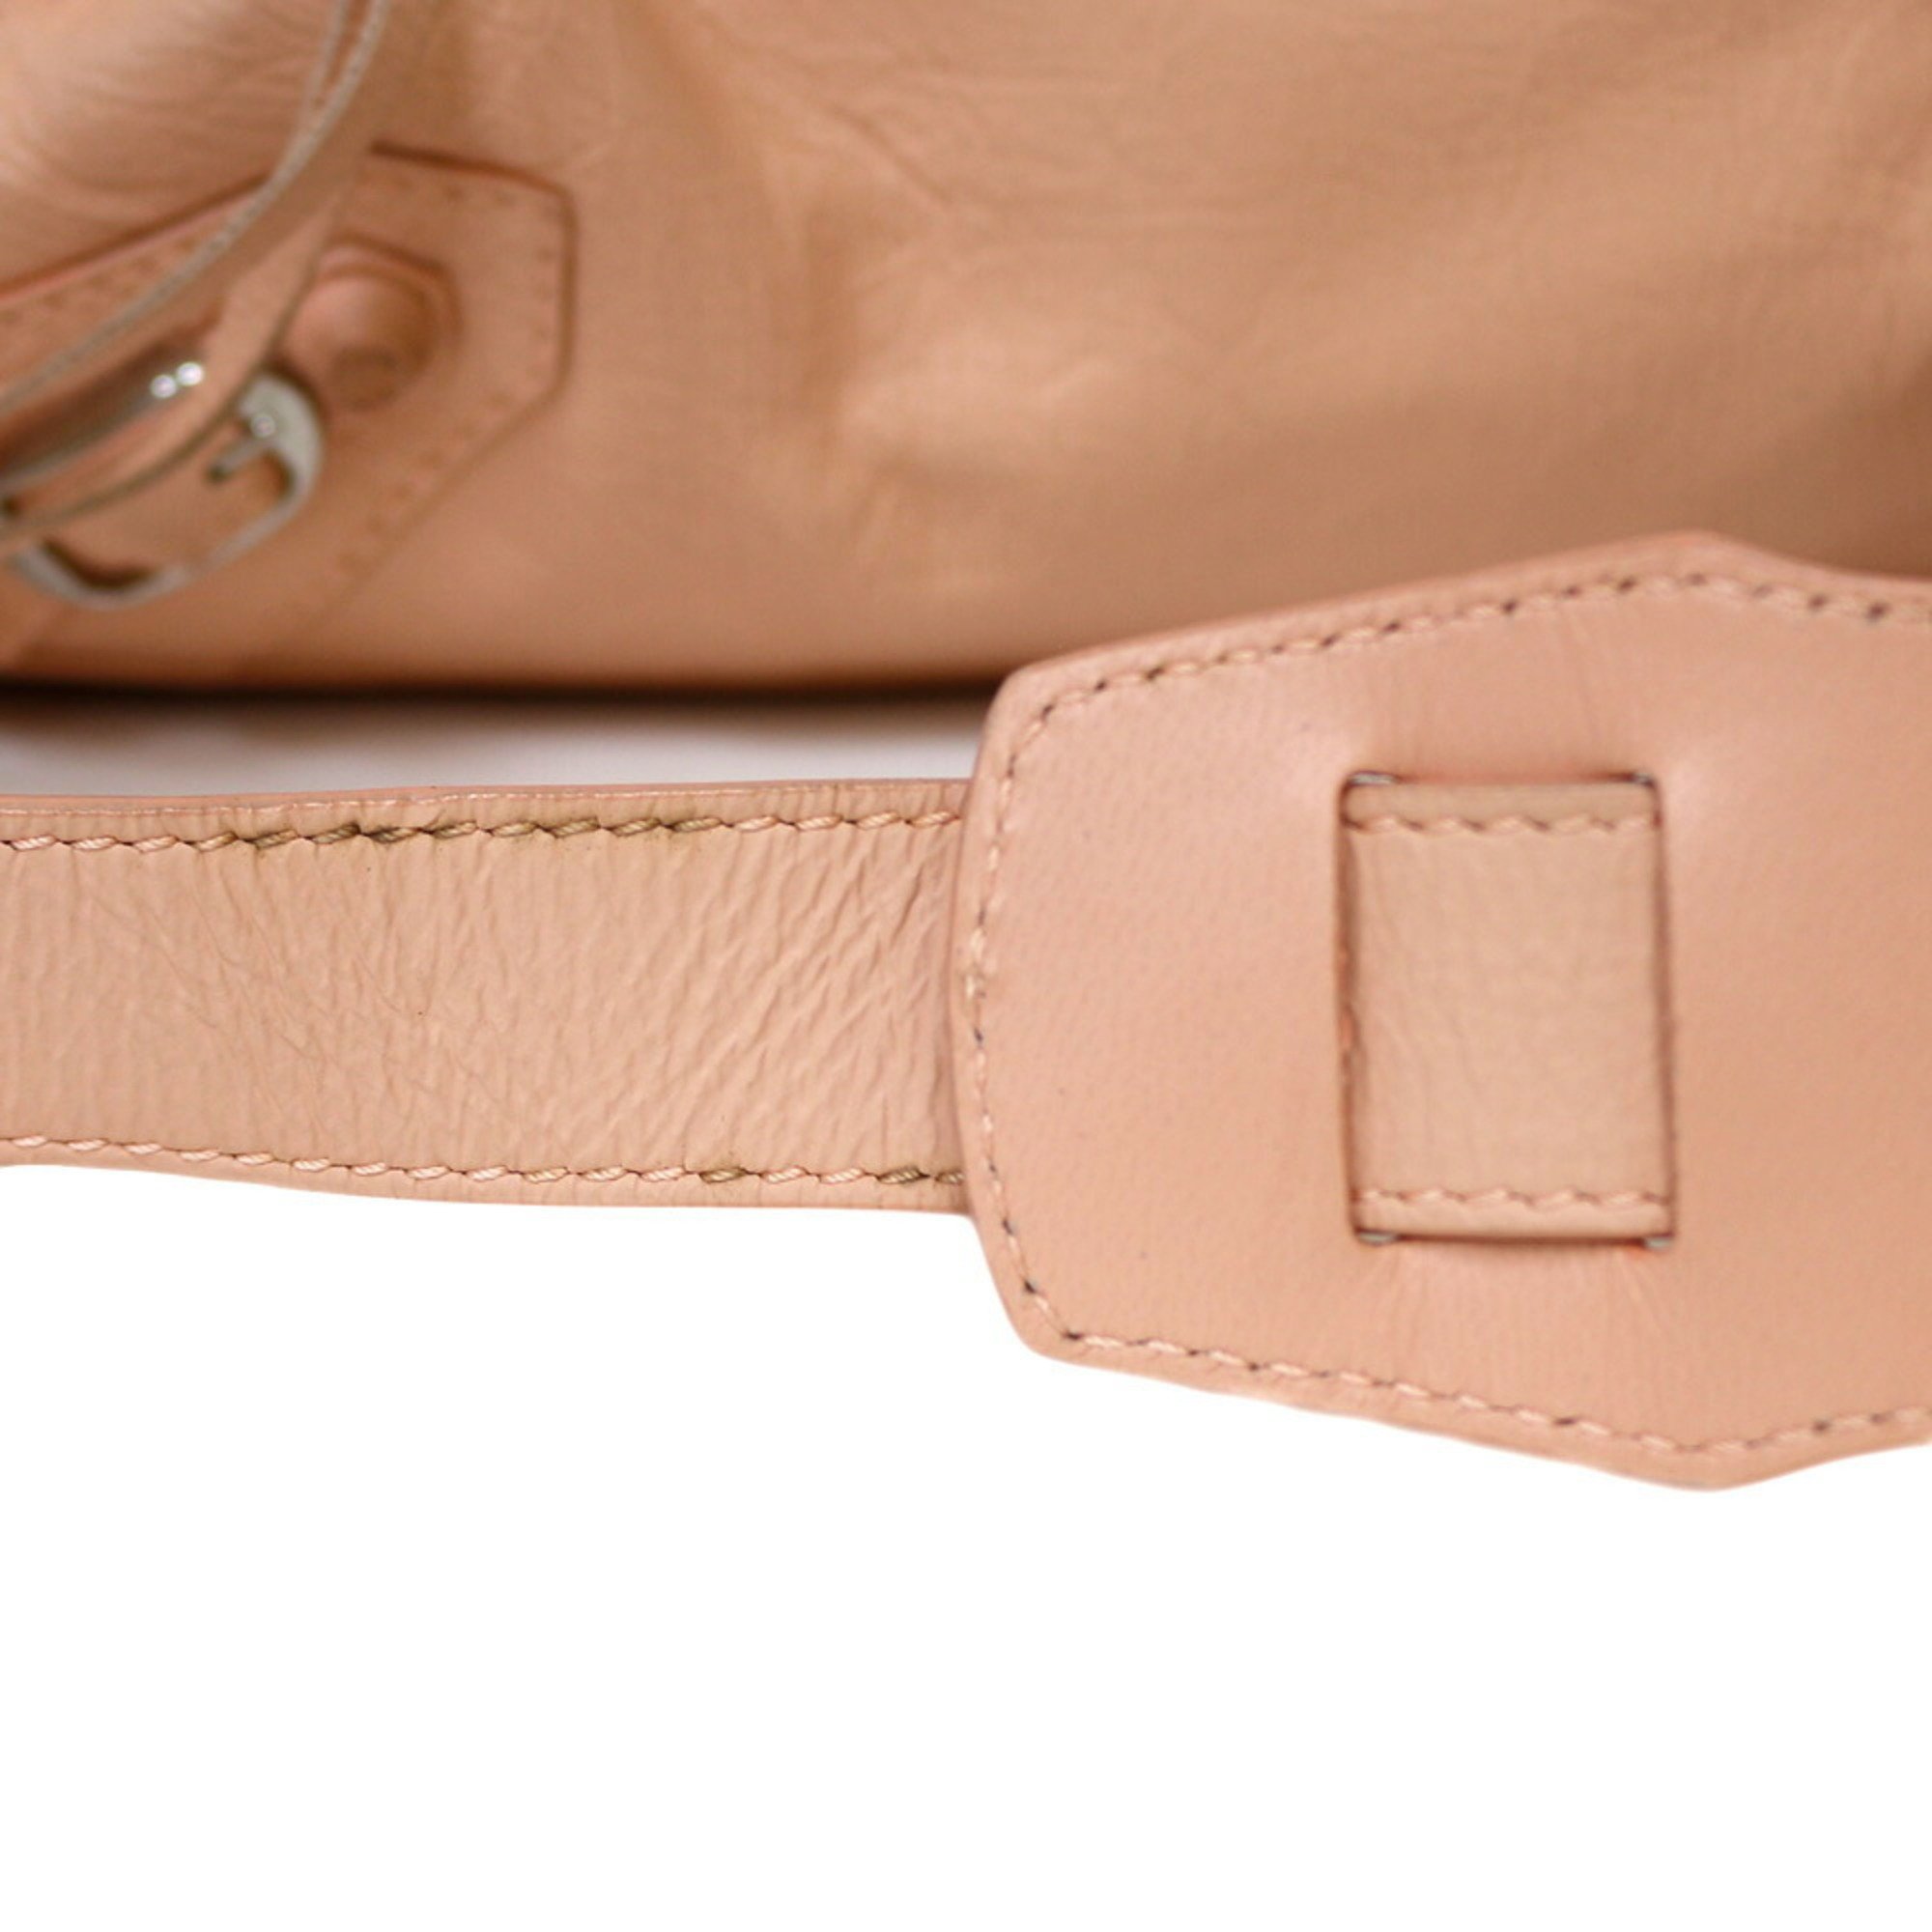 Balenciaga Shoulder Bag Leather Pink Women's BALENCIAGA BRB01000000000114